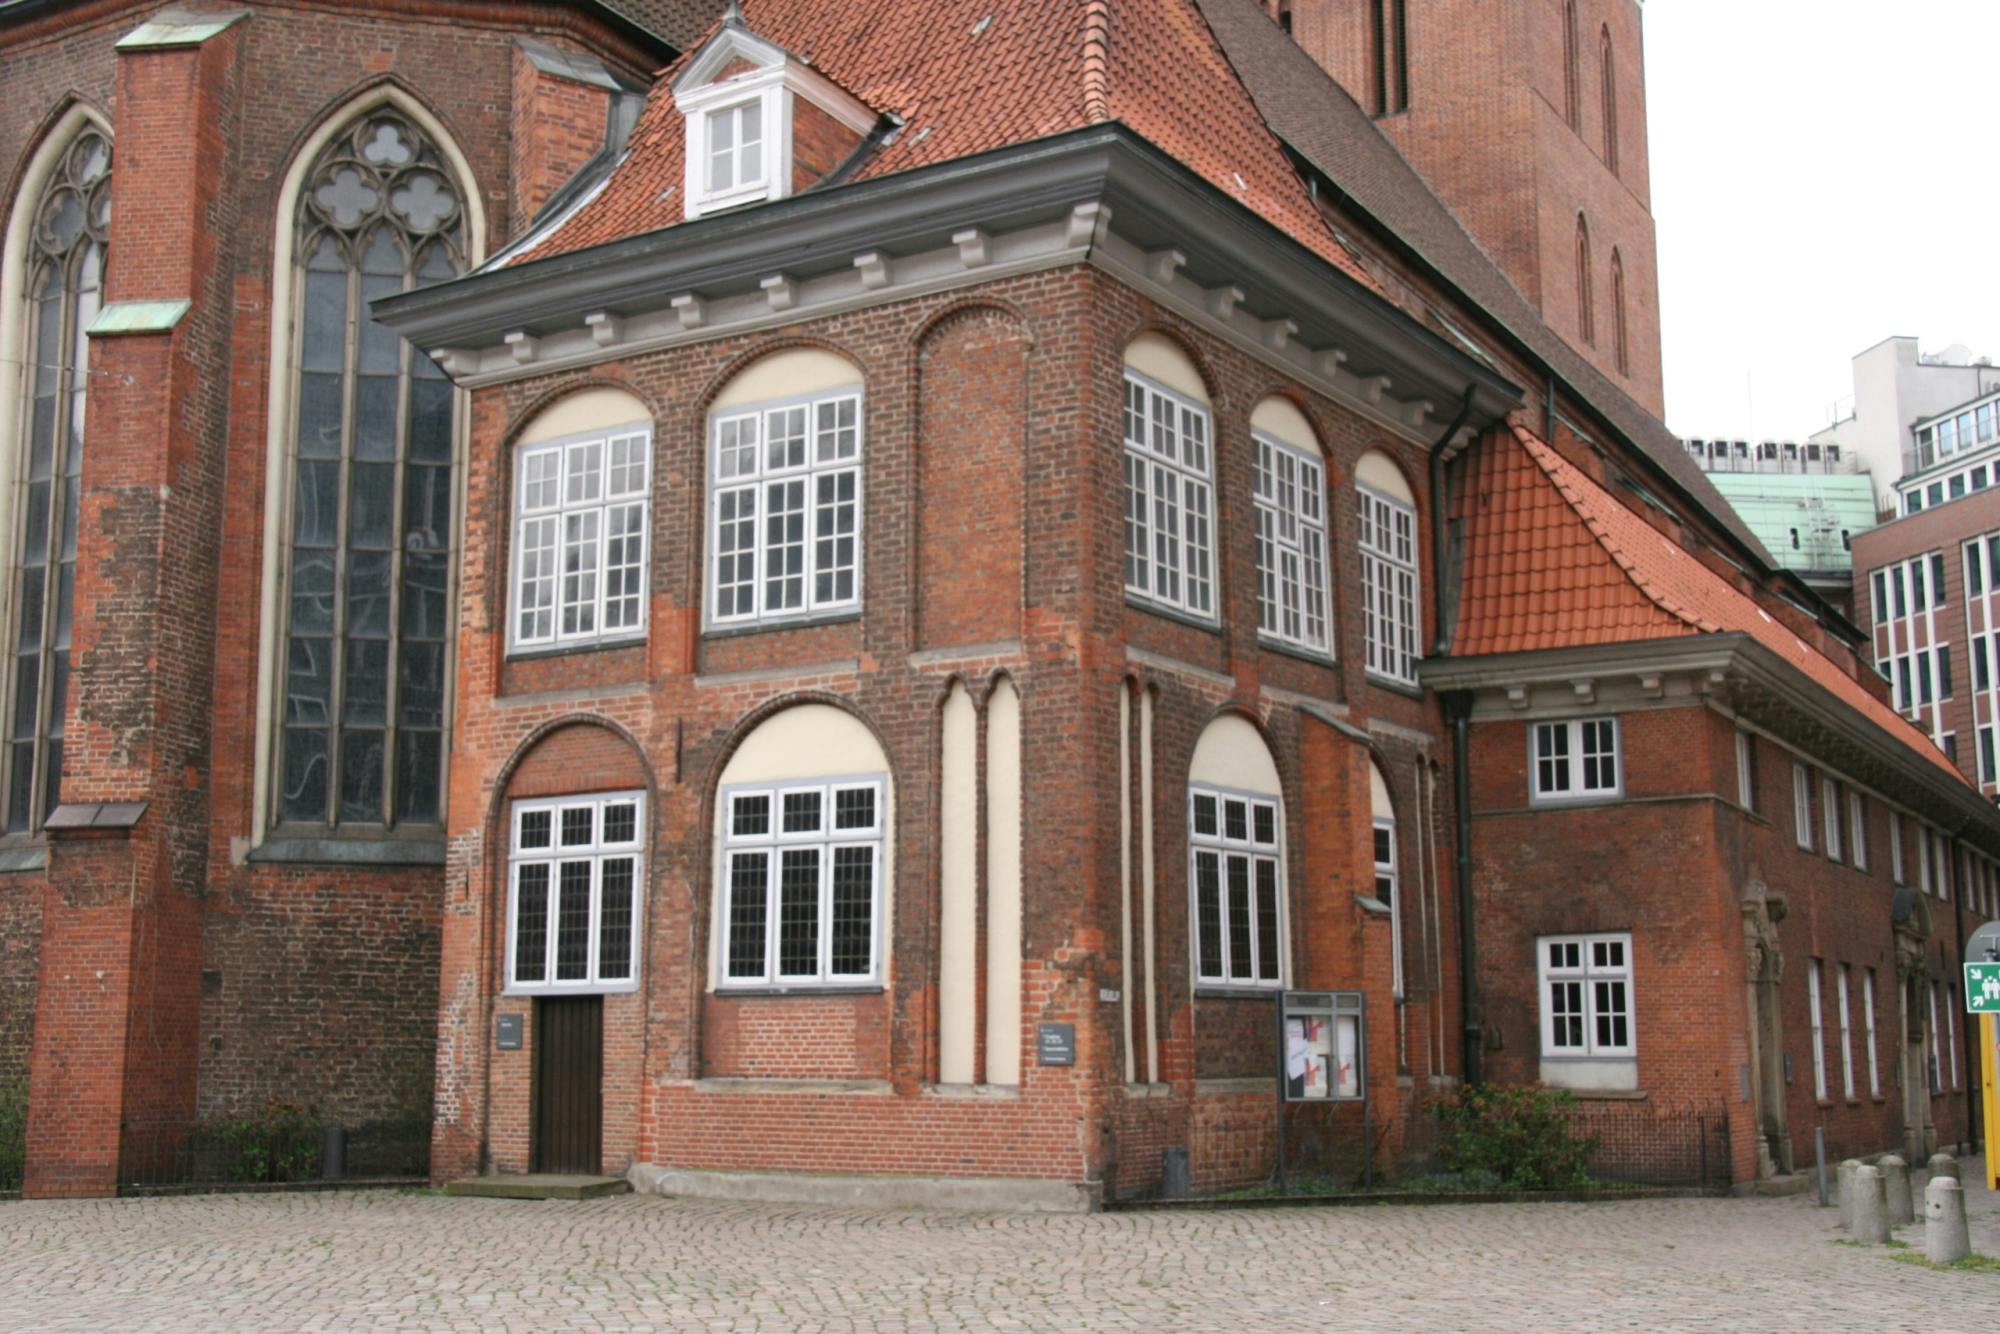 Kościoły, klasztory i klasztory zwiedzanie starego miasta w Hamburgu